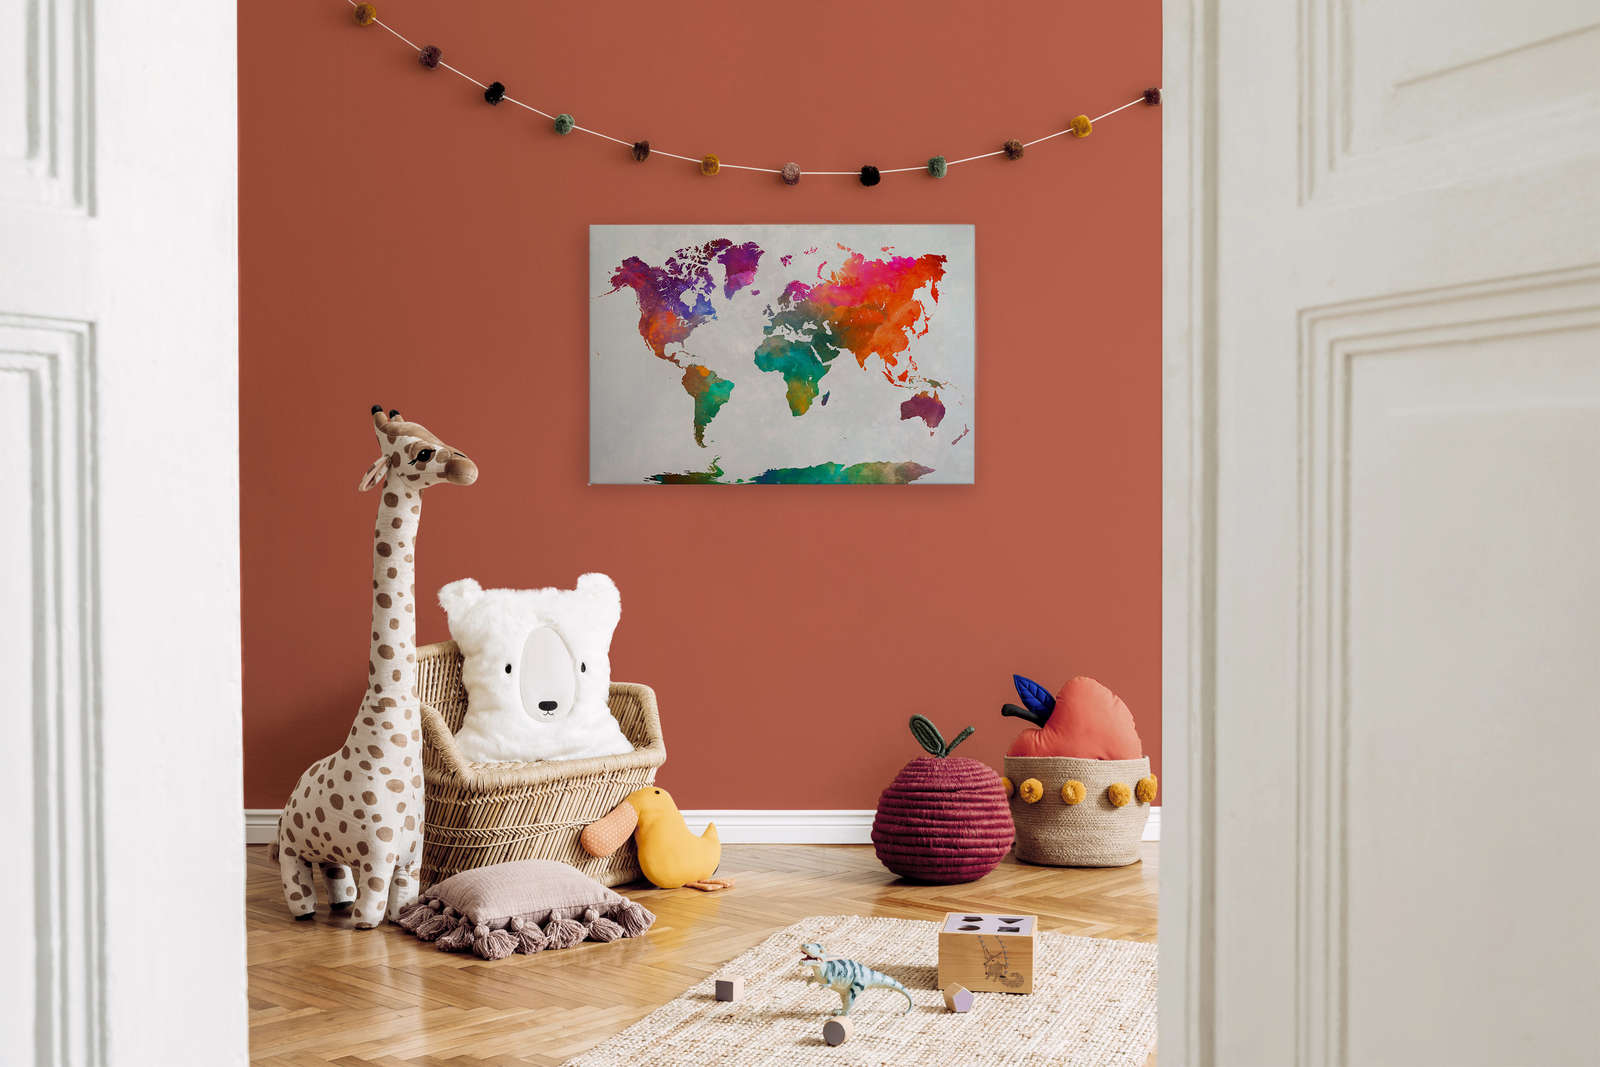             Canvas kleurrijke wereldkaart - 0,90 m x 0,60 m
        